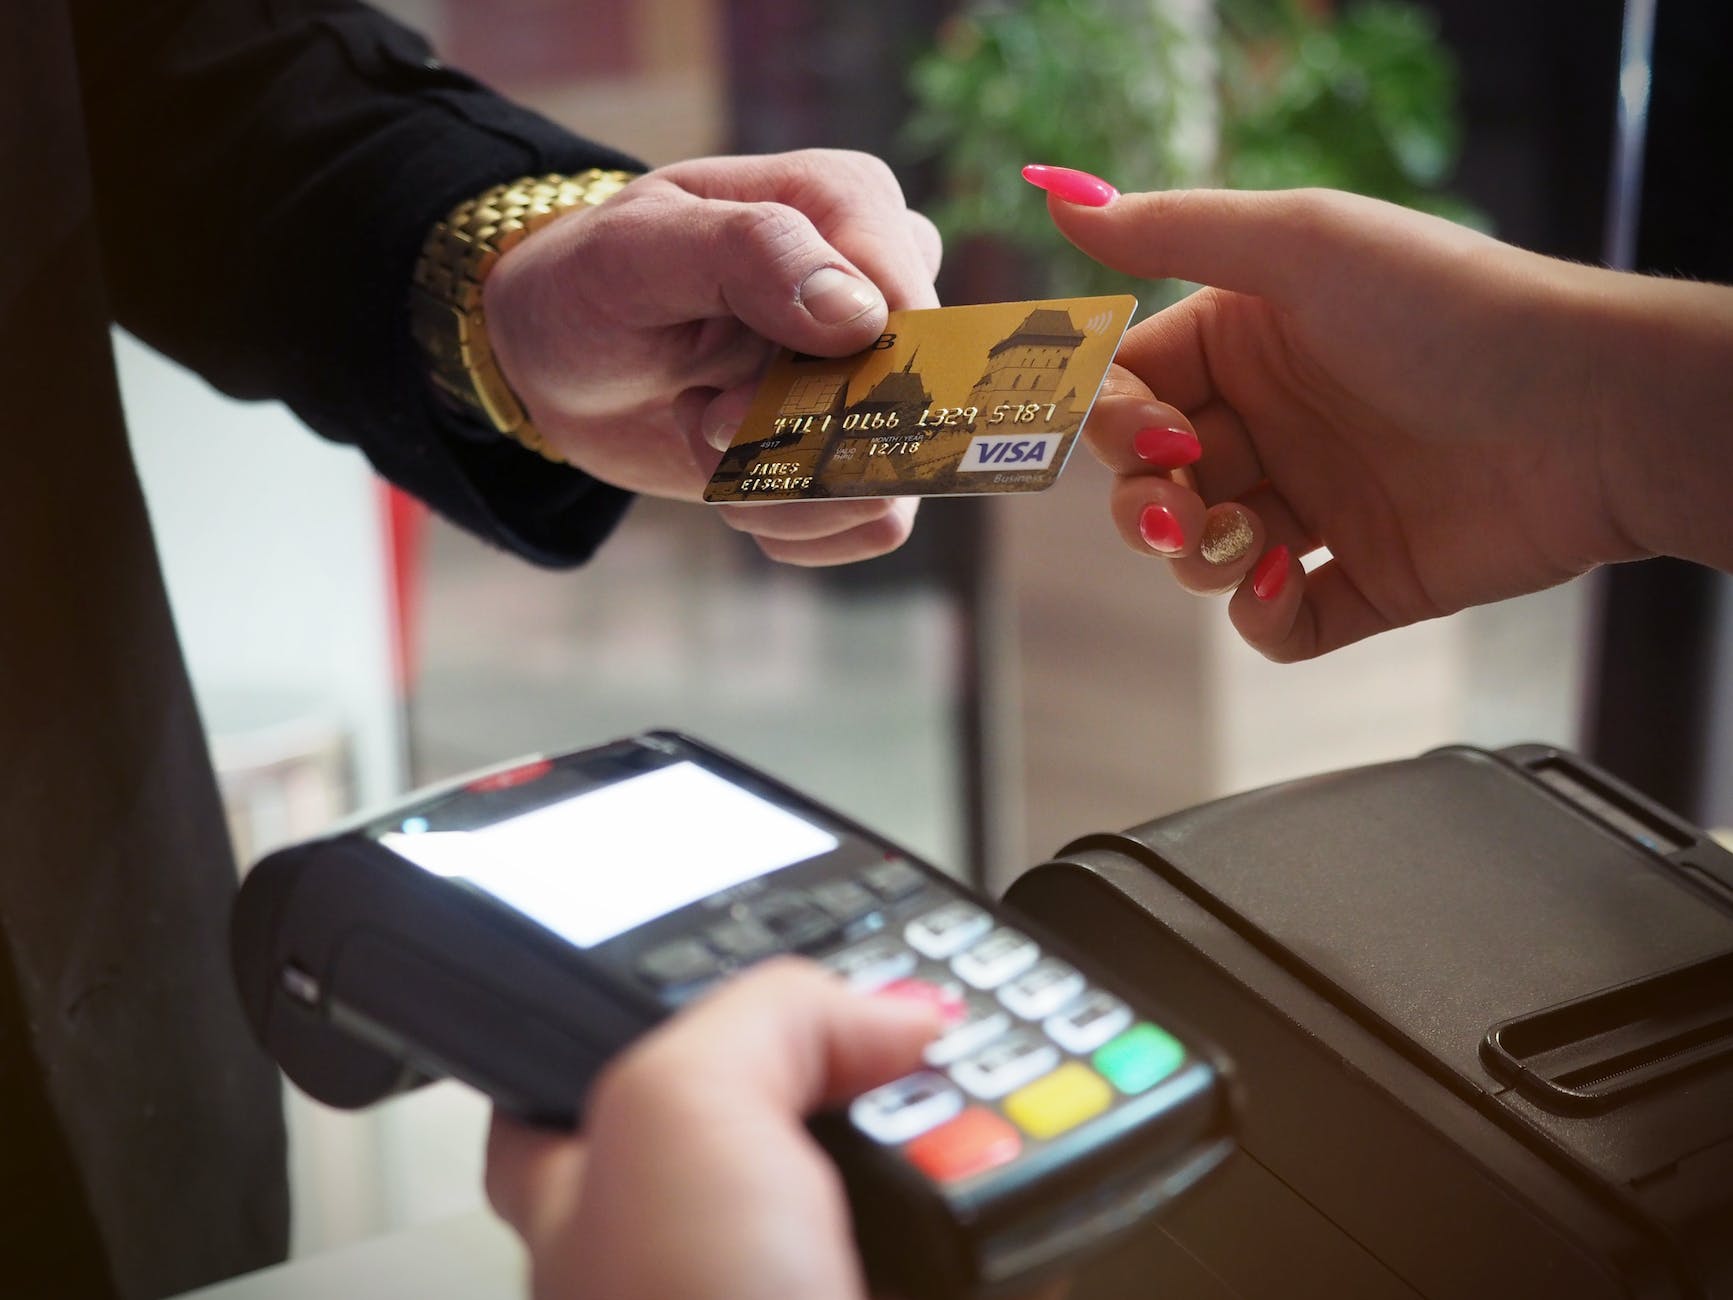 black payment terminal - understanding how banks operate: Money & debt 